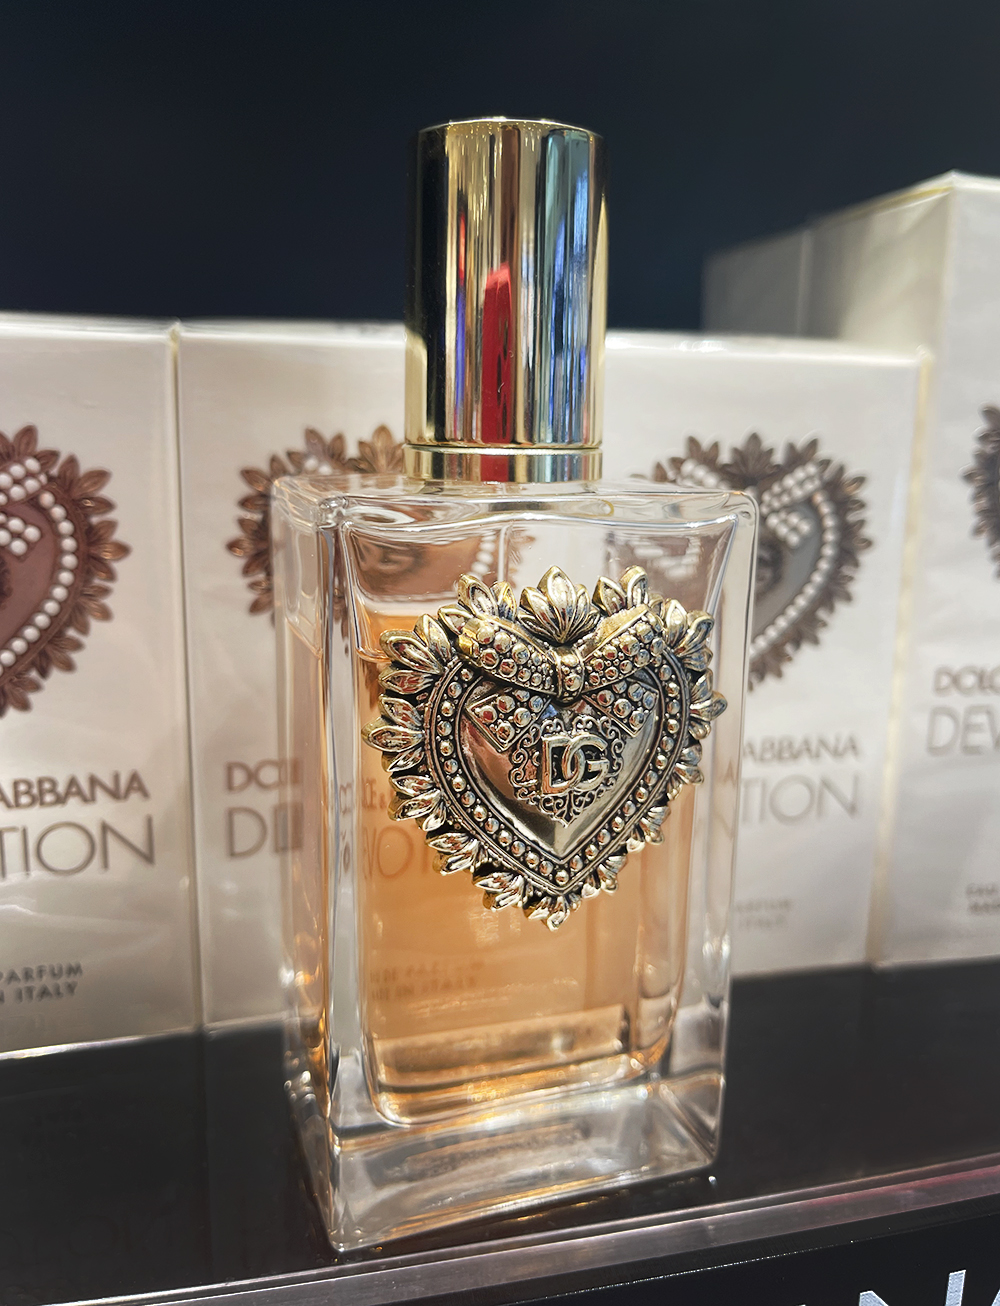 Dolce & Gabbana Devotion Eau de Parfum ~ Fragrance Reviews